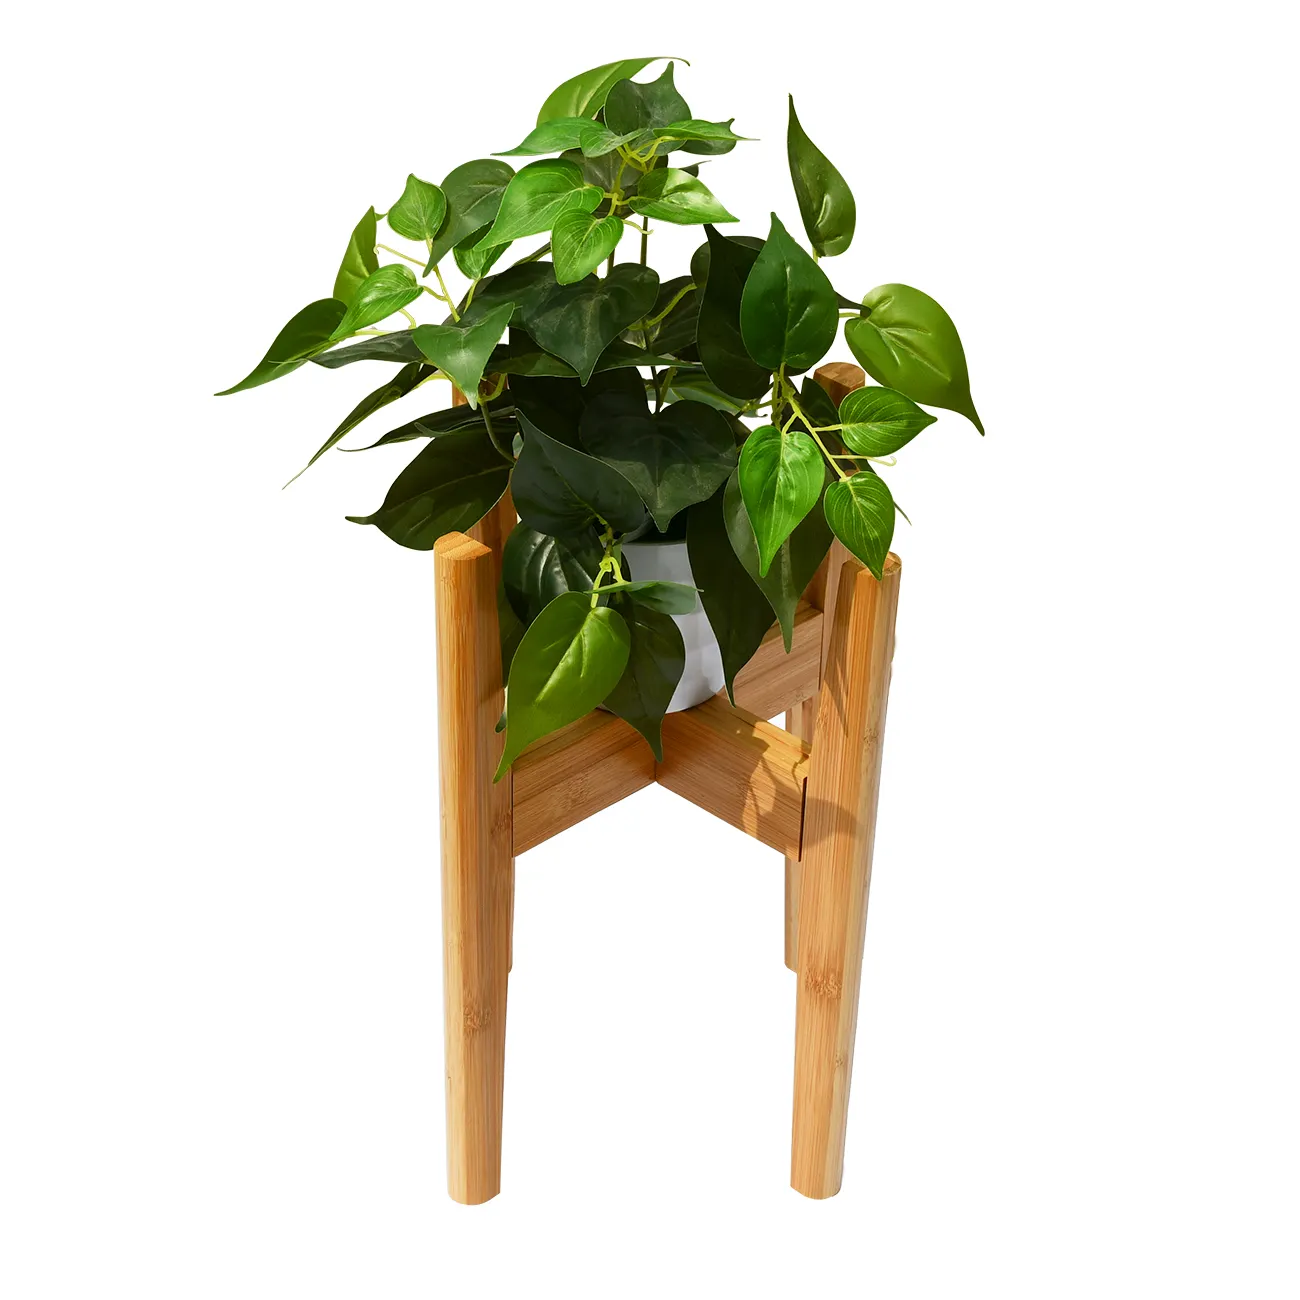 Suporte de madeira para plantas de bambu para guardar vasos de plantas para ambientes internos e externos